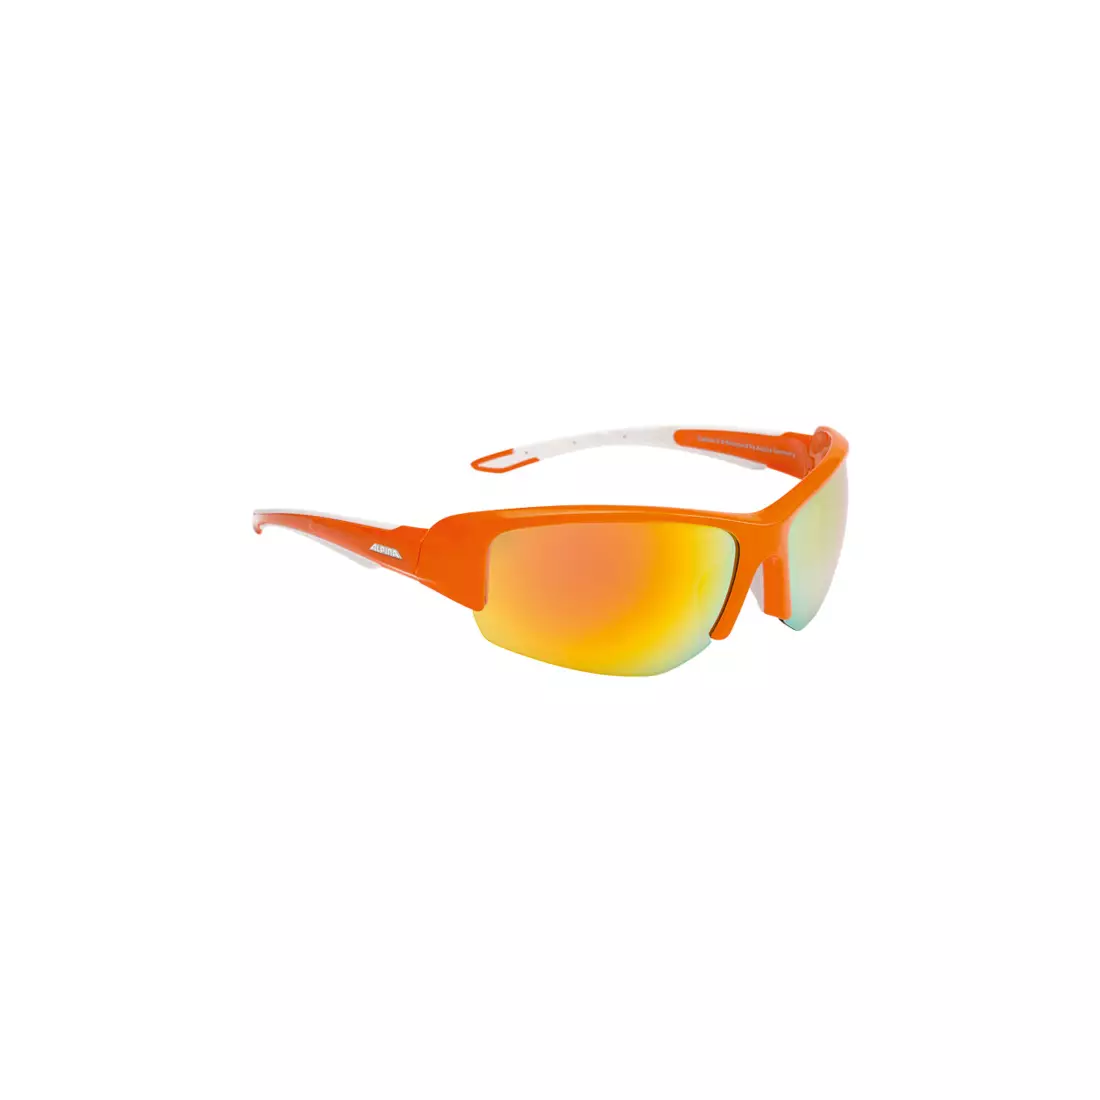 ALPINA - Sportbrille CALLUM 2.0 - orange-weißes / orangefarbenes Keramikspiegelglas.